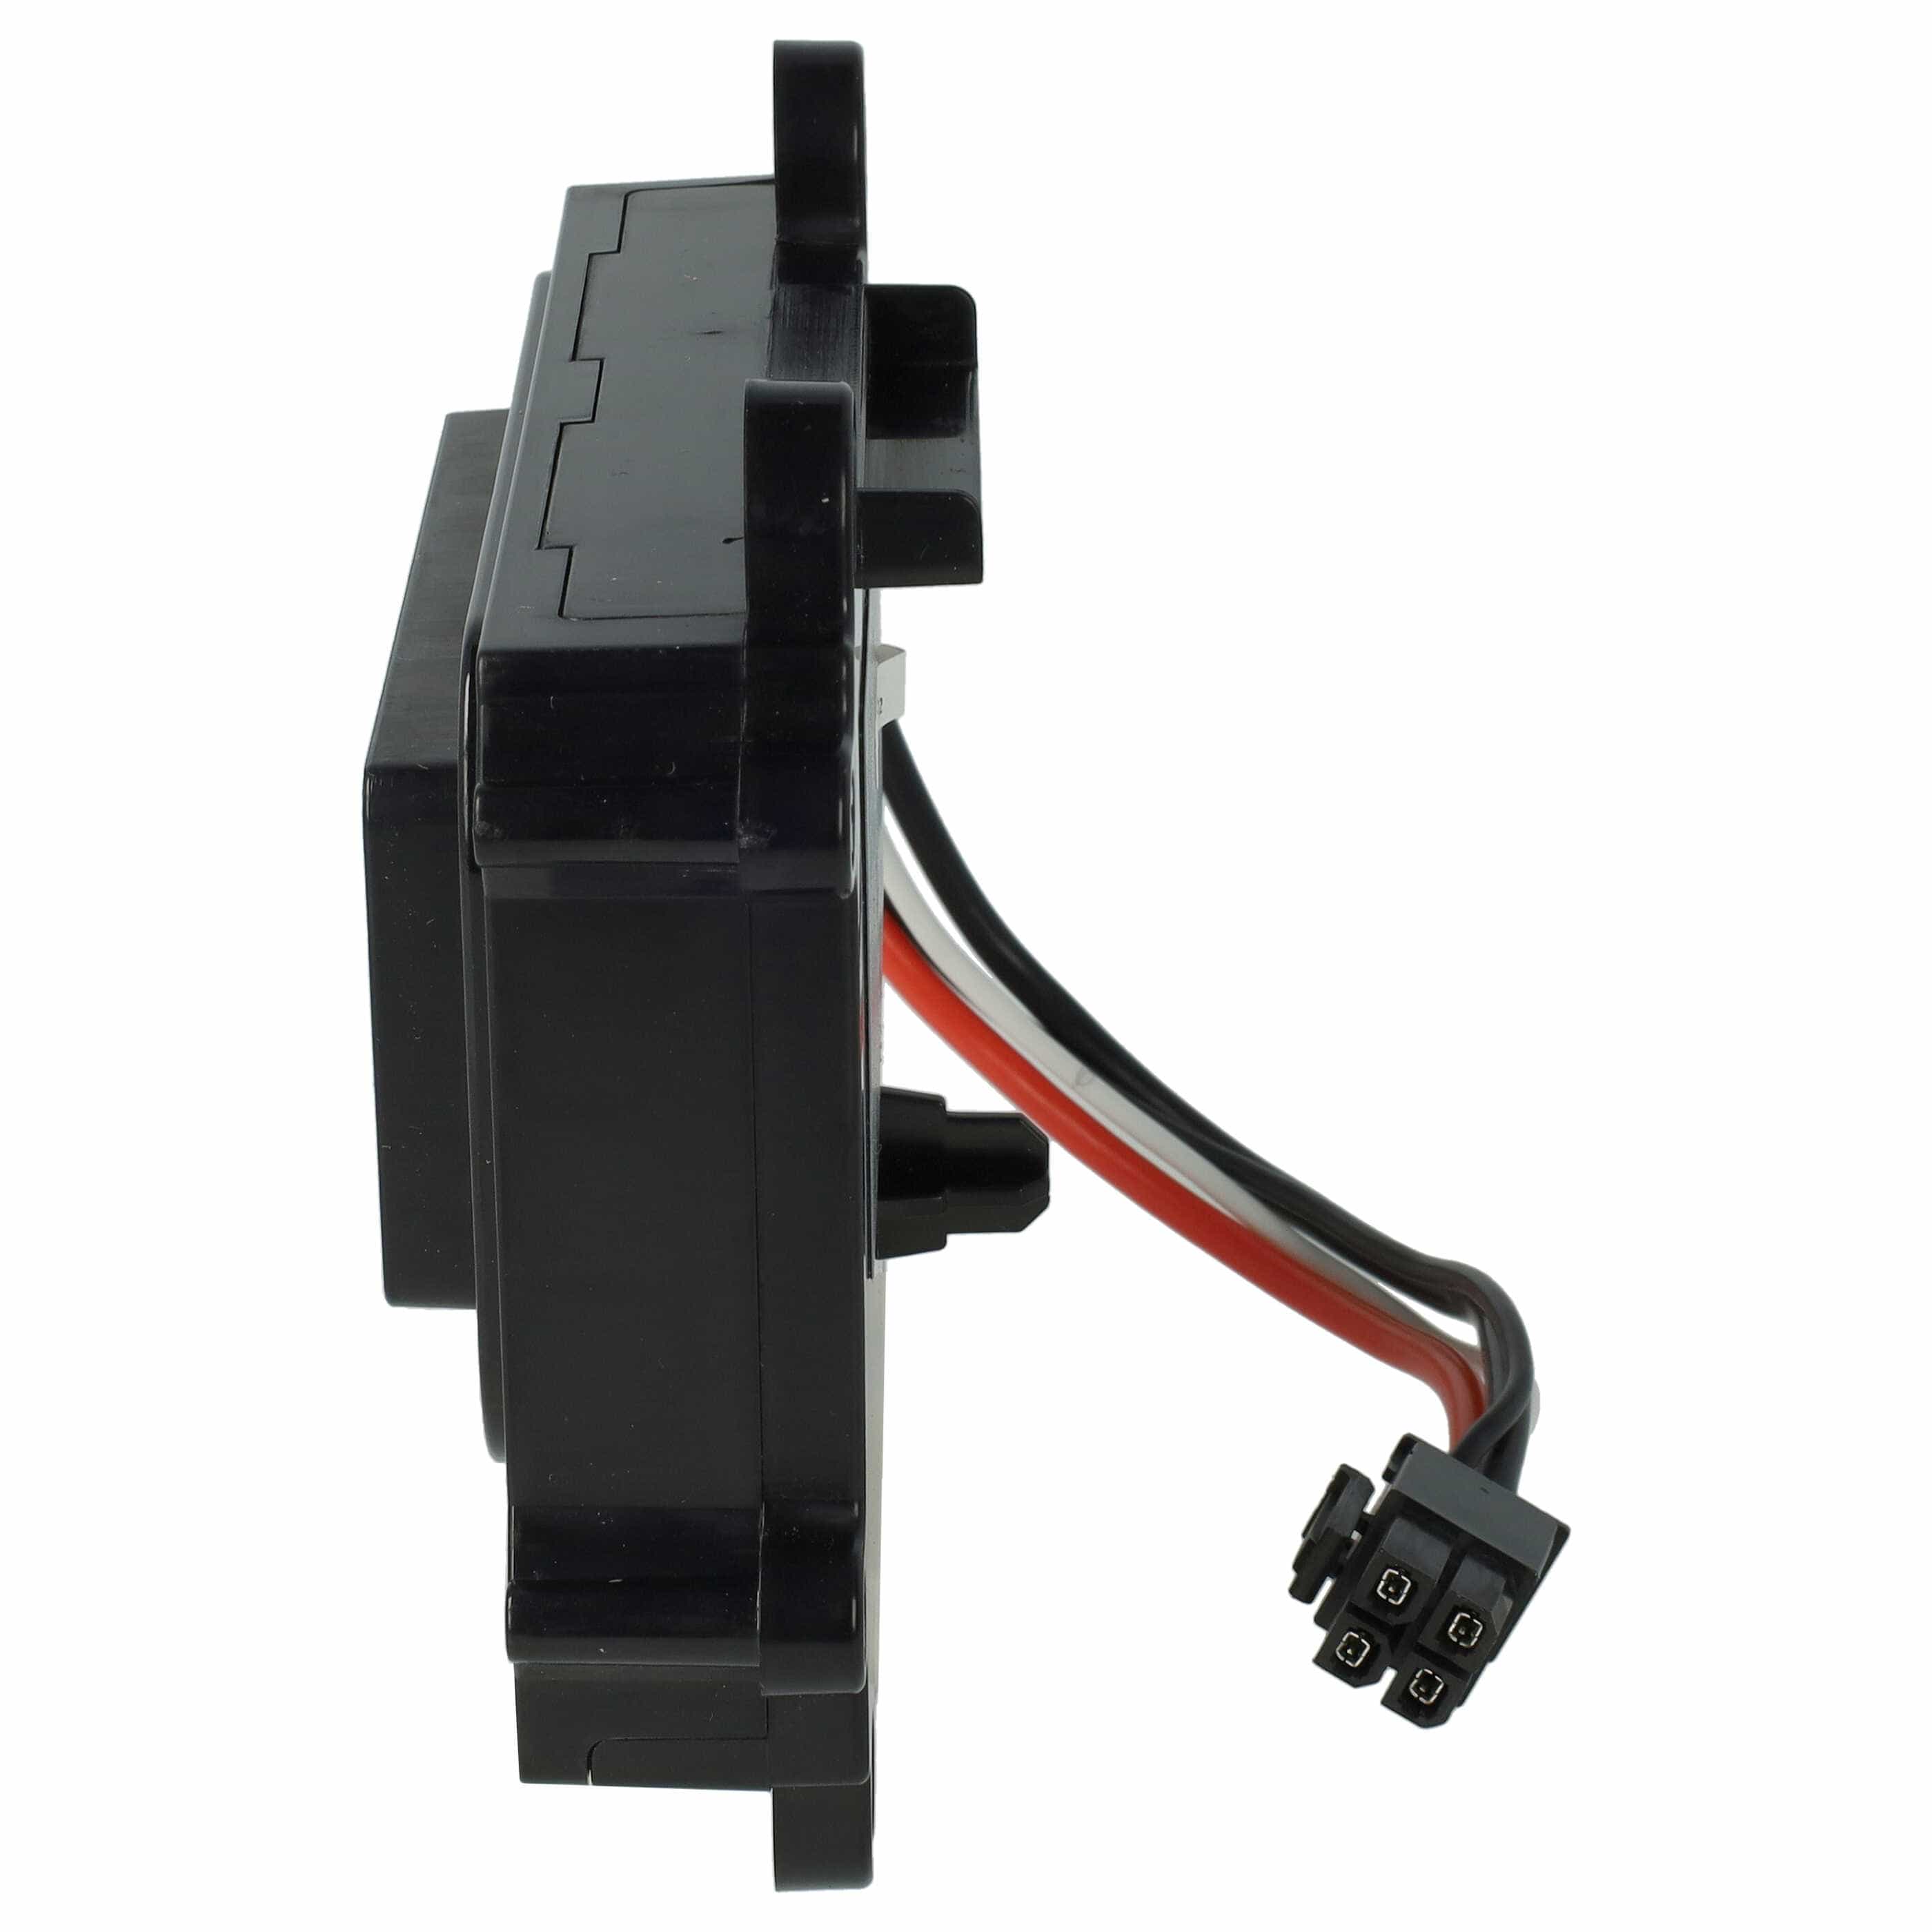 Akumulator do robota koszącego zamiennik Bosch F016L69176, F016104898, F 016 104 898 - 2000 mAh 18 V Li-Ion